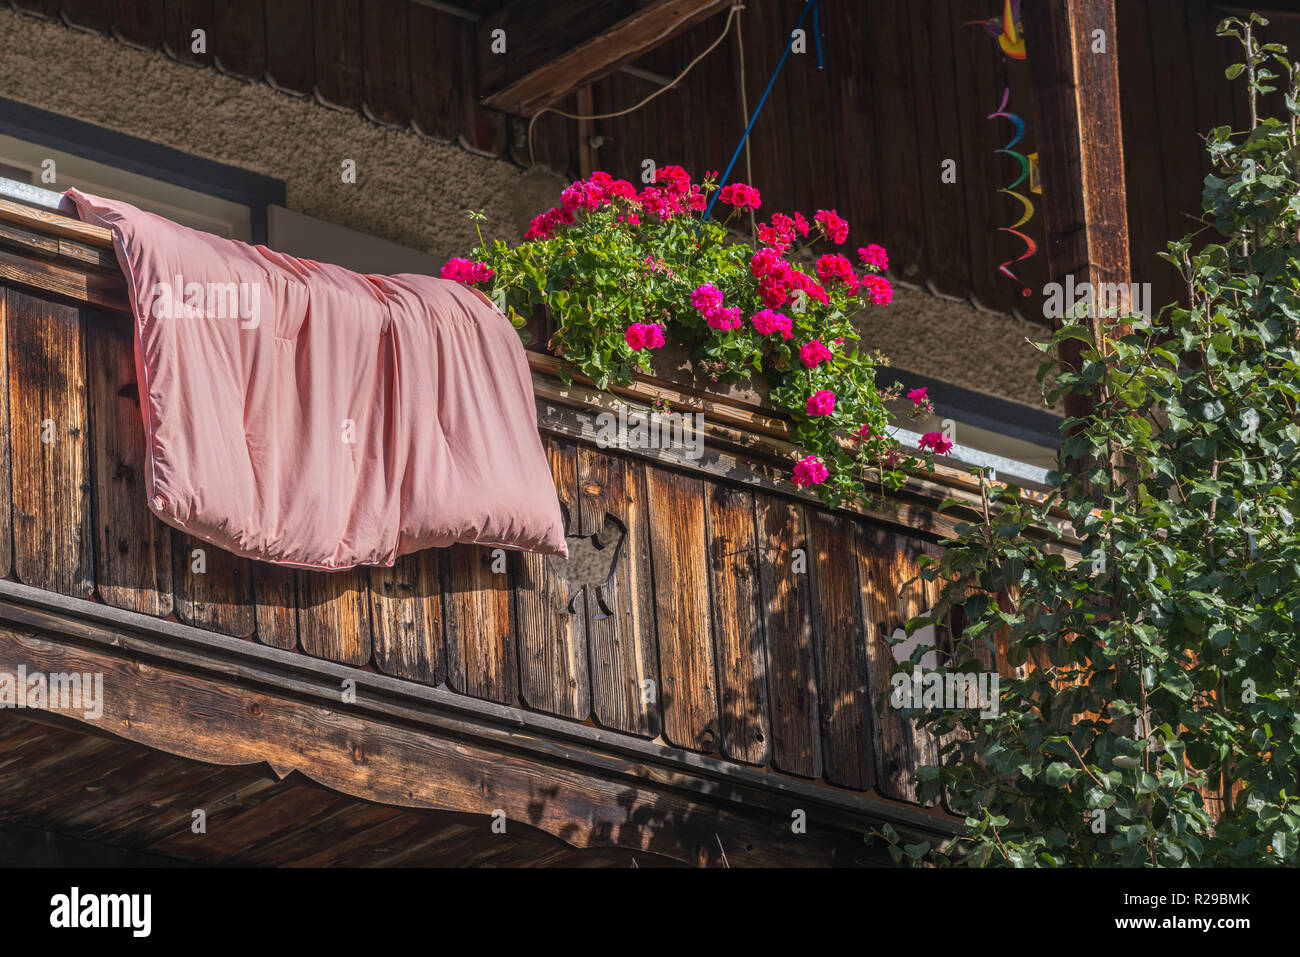 Les draps suspendus dans l'air frais sur le balcon, Oberammergau, SAPL Ammergau, Haute-Bavière, Bavaria, Germany, Europe Banque D'Images